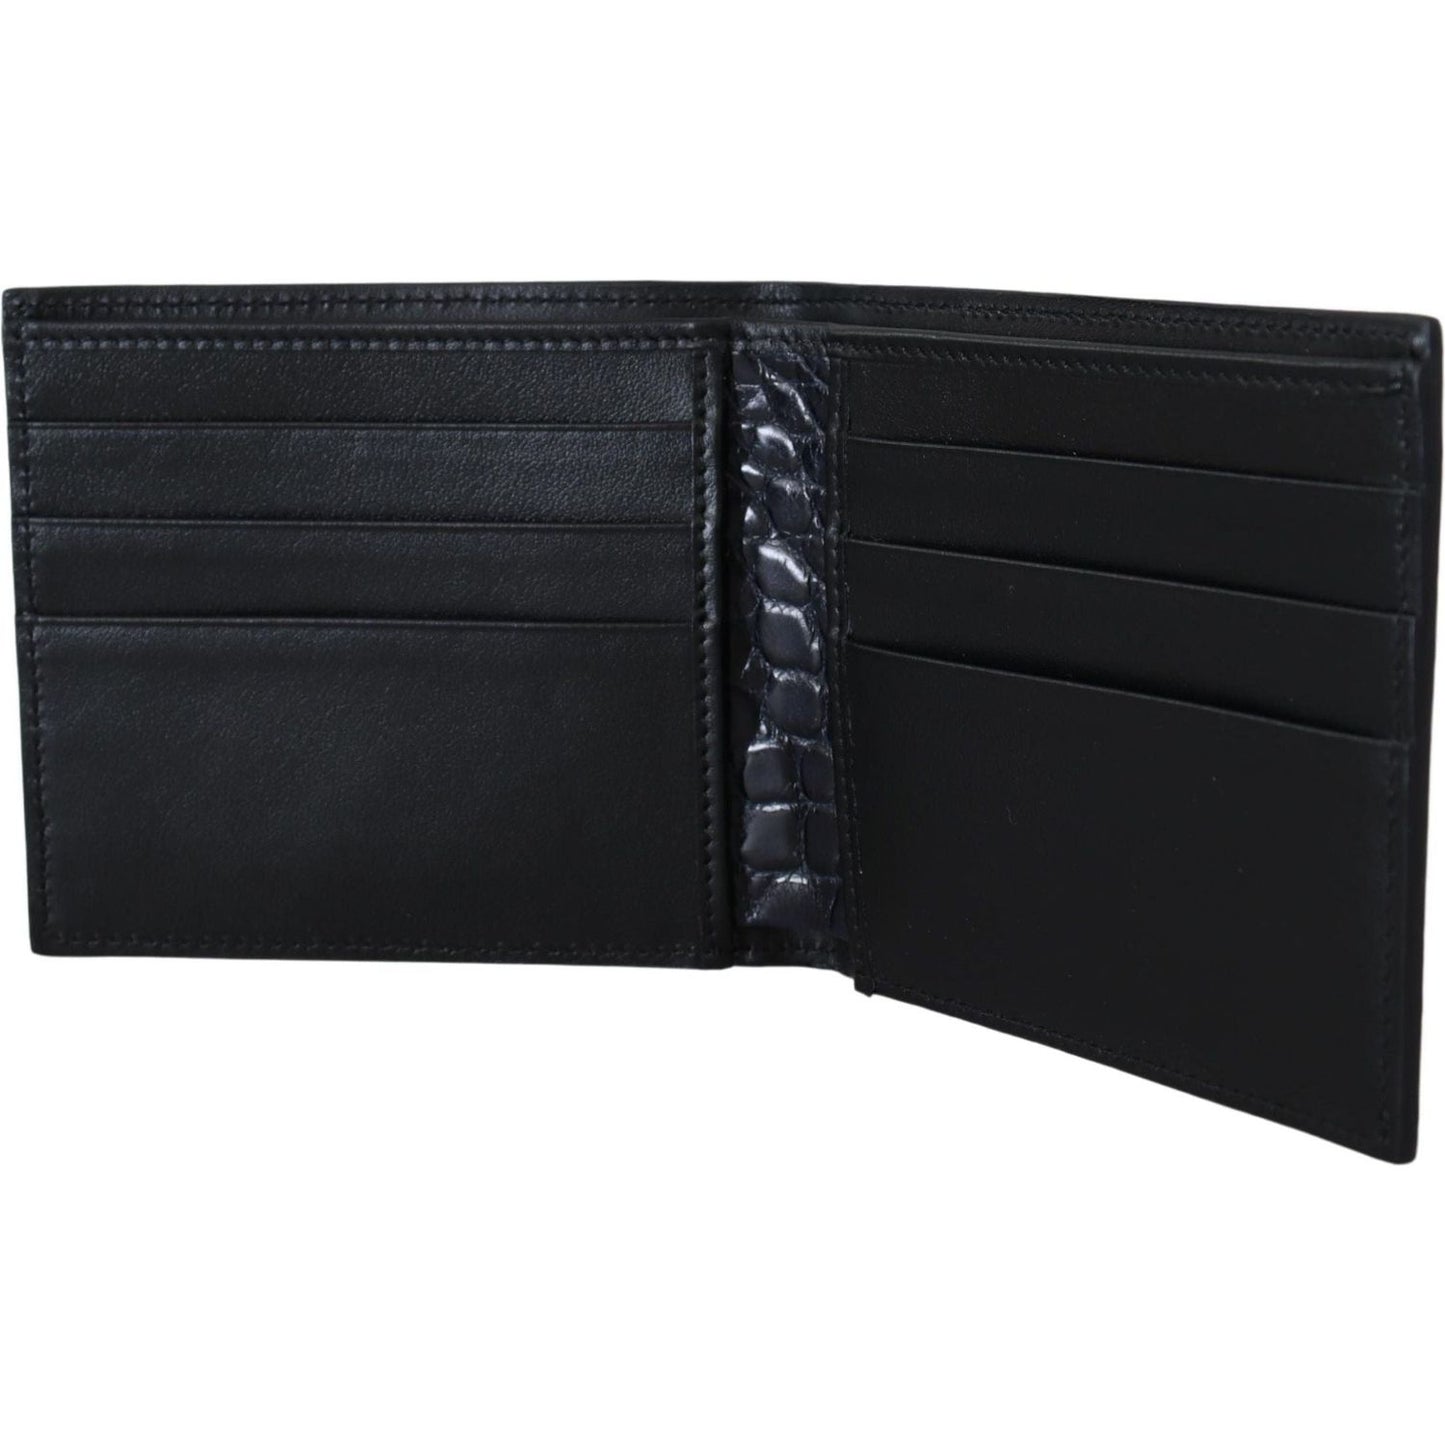 Dolce & Gabbana Elegant Exotic Leather Bifold Wallet black-bifold-card-holder-men-exotic-leather-wallet-1